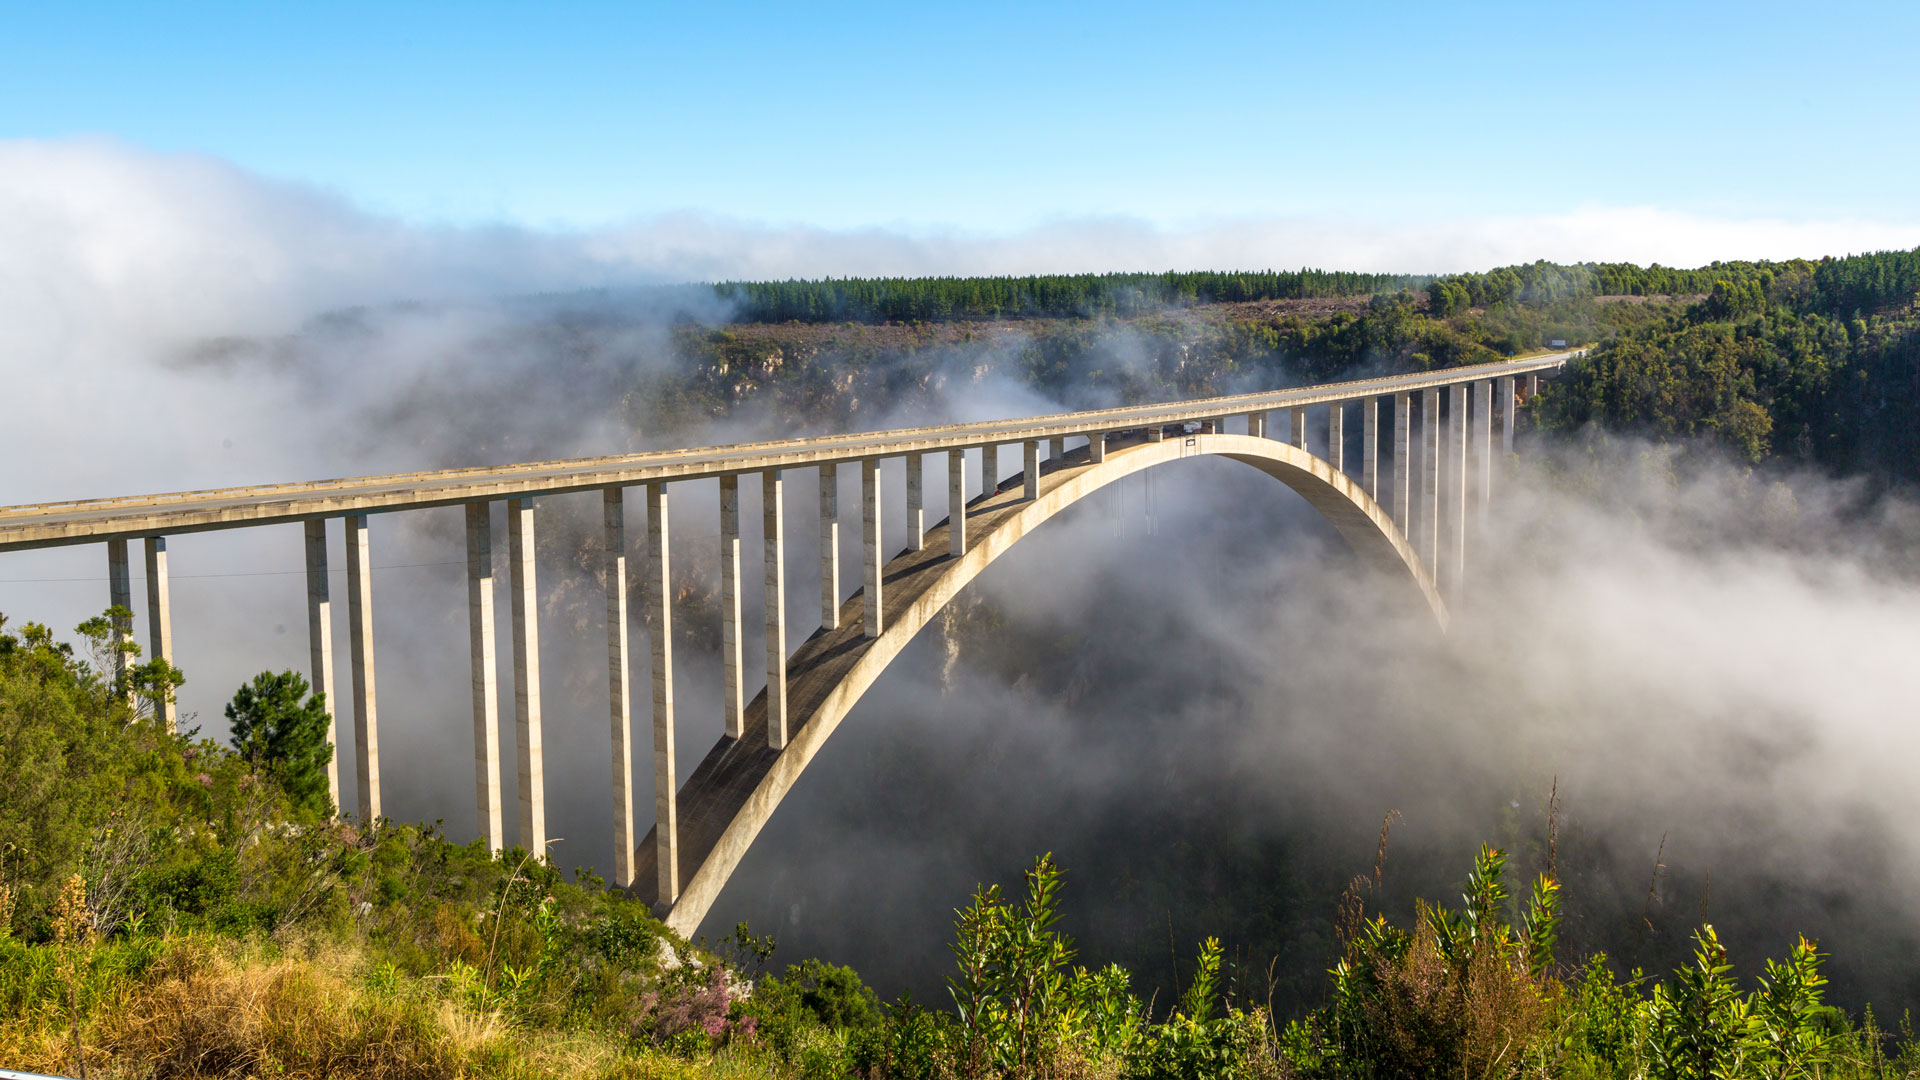 Bridge over fog between green hills